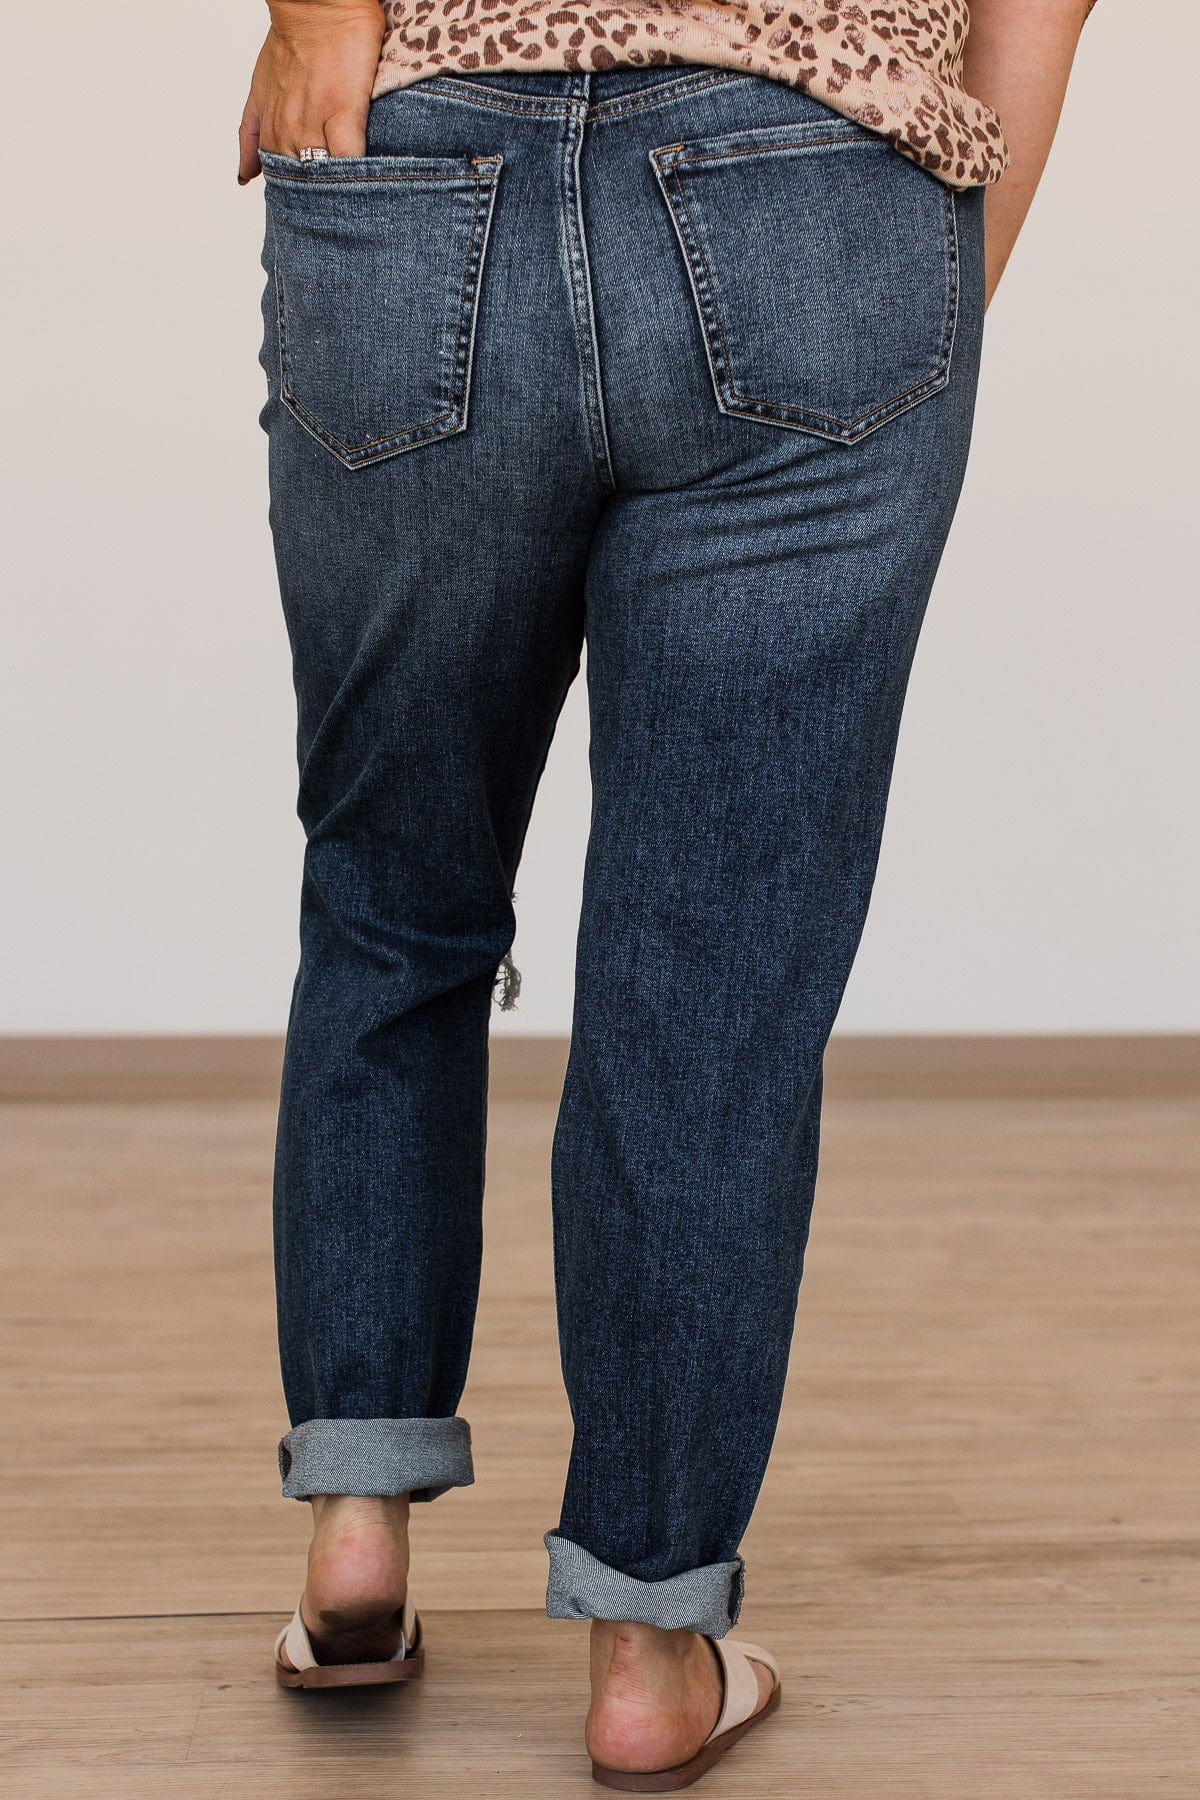 Sneak Peek Tomboy Skinny Jeans- Parker Wash